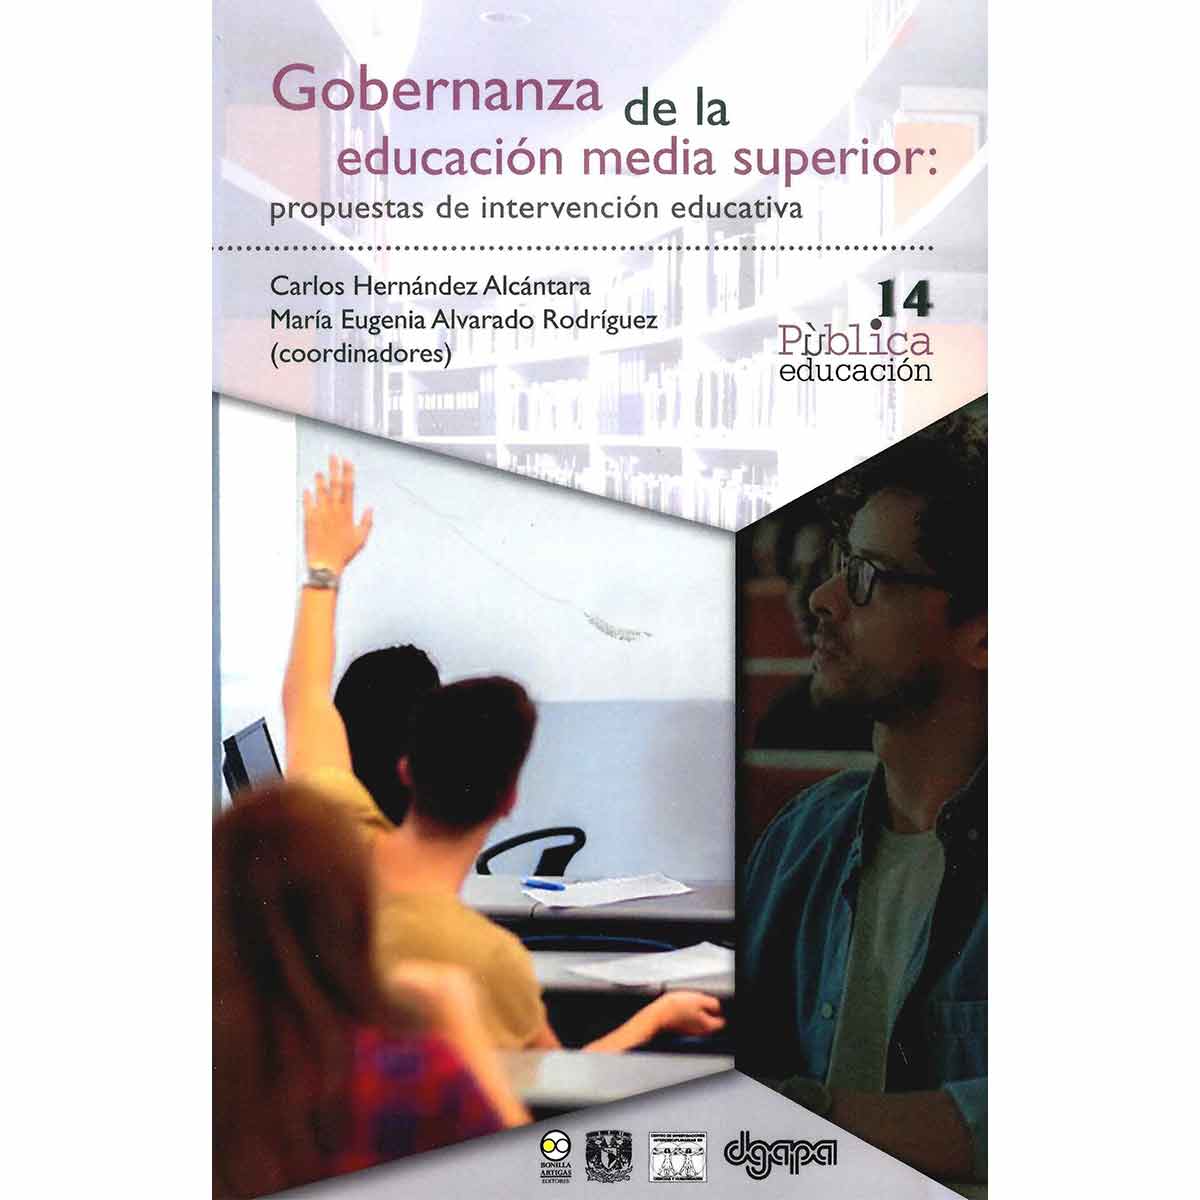 GOBERNANZA DE LA EDUCACIÓN MEDIA SUPERIOR: PROPUESTAS DE INTERVENCIÓN EDUCATIVA